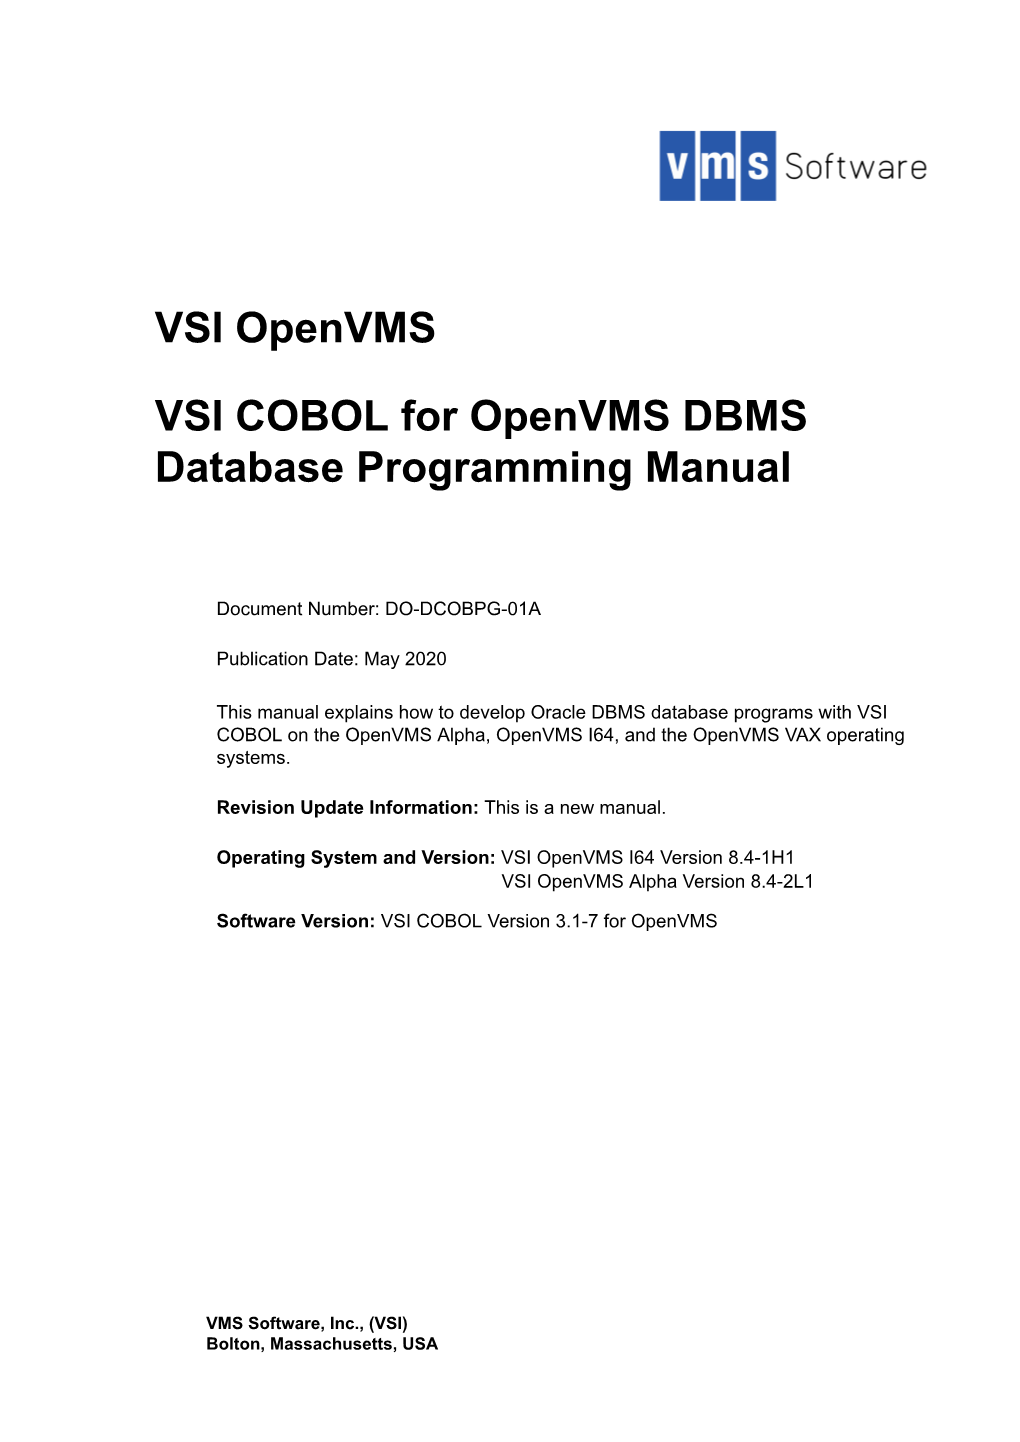 VSI COBOL for Openvms DBMS Database Programming Manual